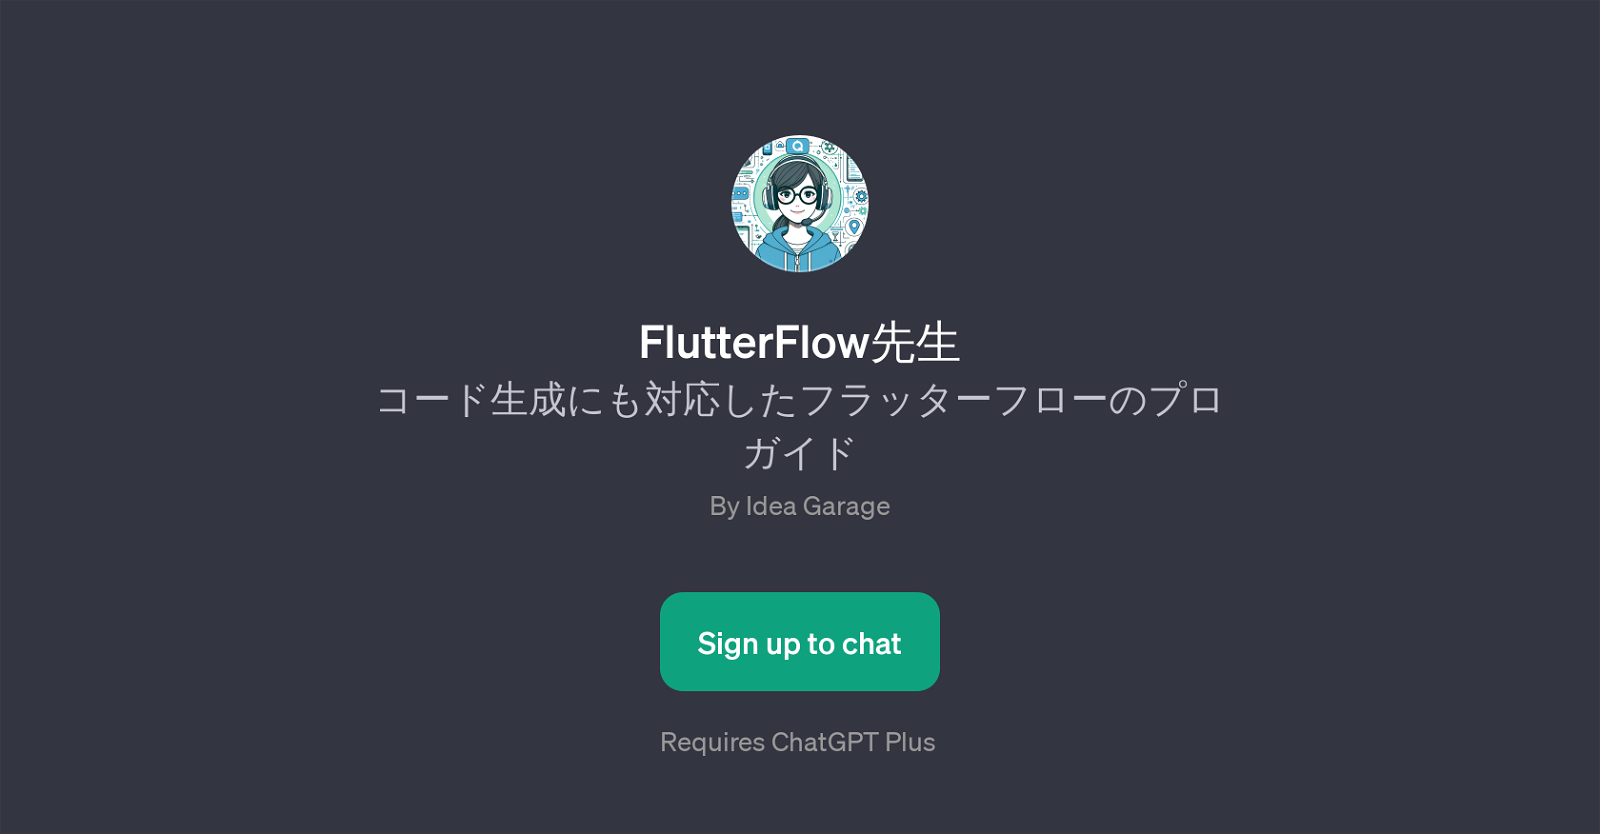 FlutterFlow website